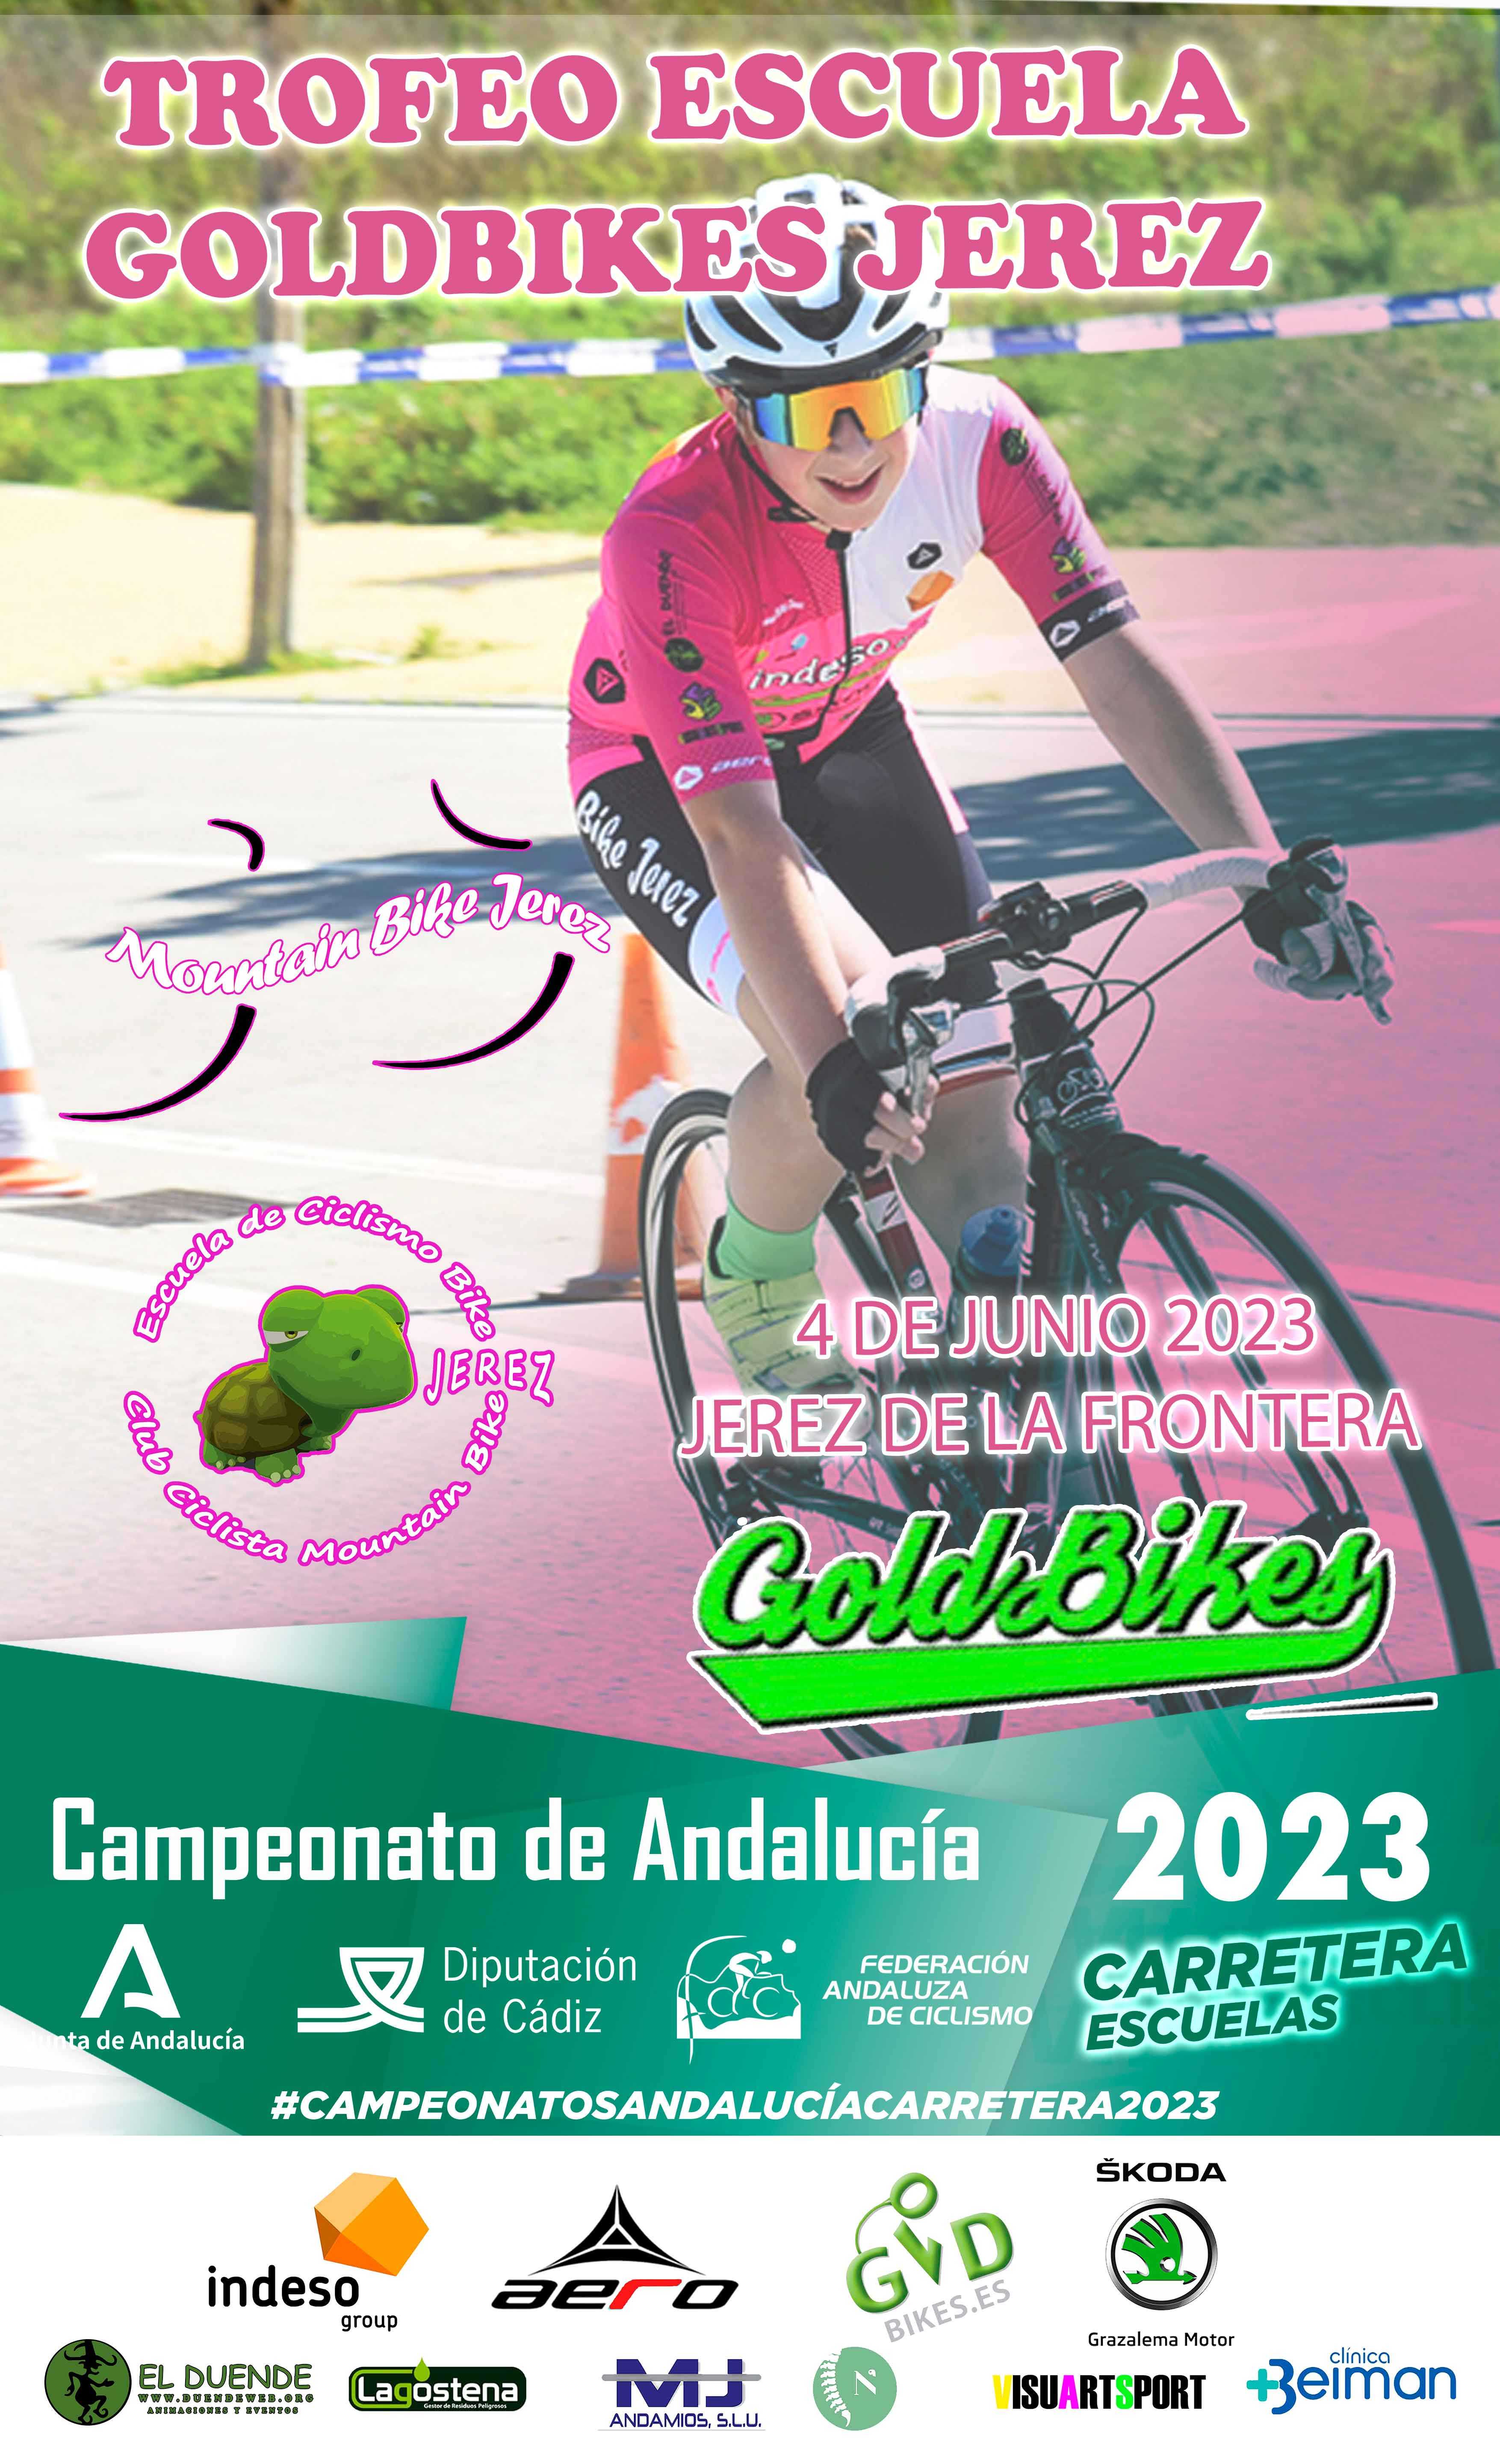 Apertura de inscripciones para el Campeonato de Andalucía Carretera Escuelas 2023